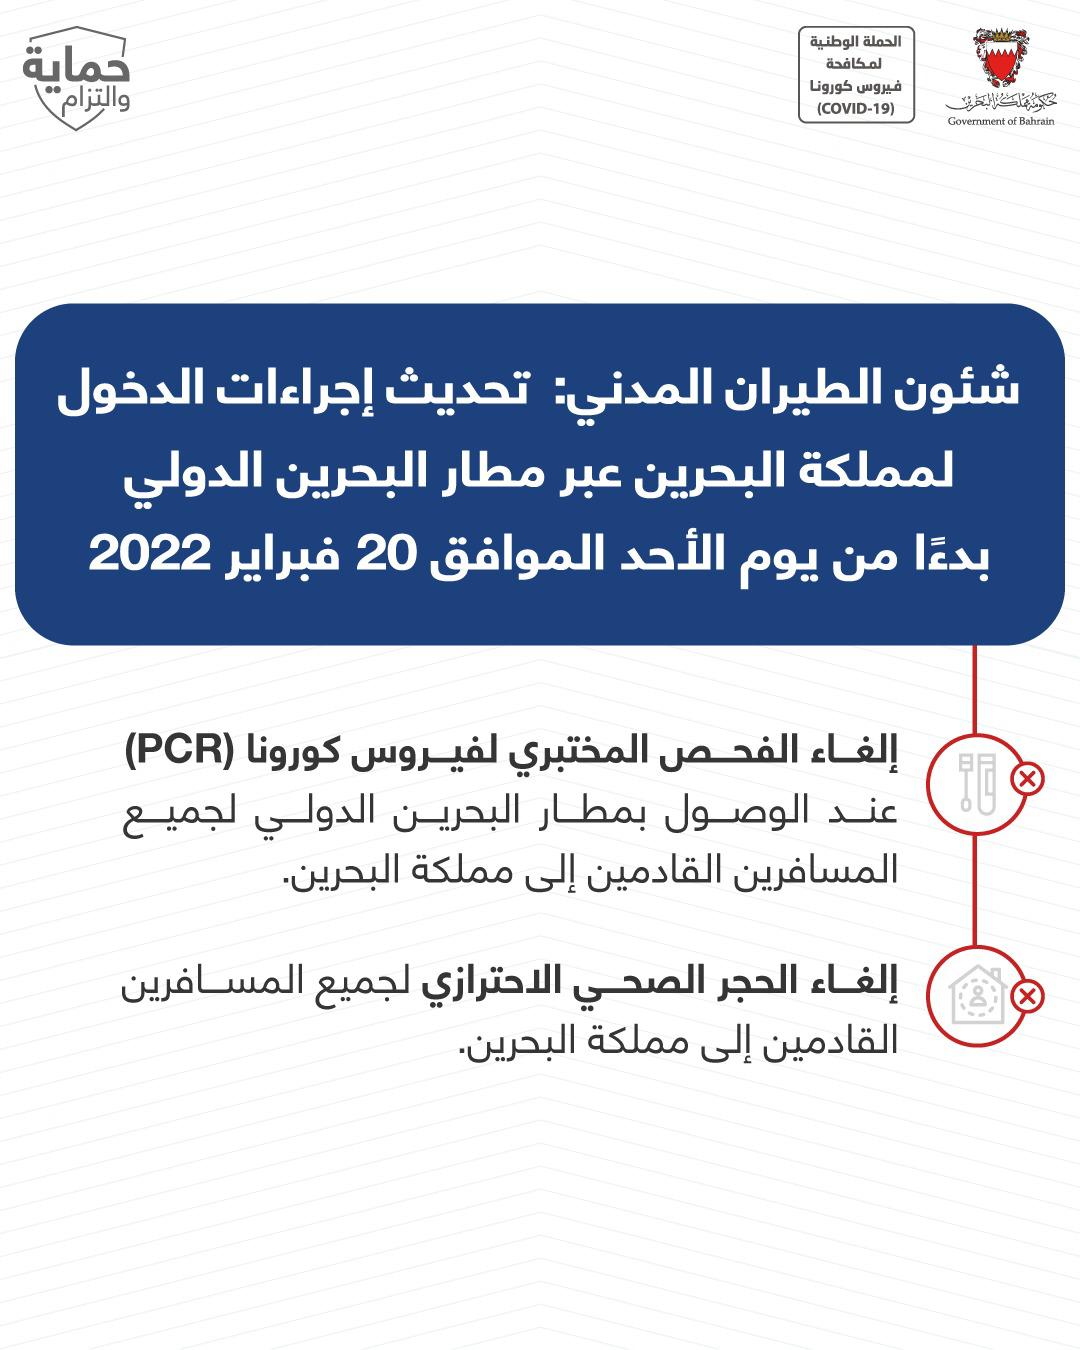 شئون الطيران المدني: إلغاء الفحص المختبري لفيروس كورونا (PCR) عند الوصول بمطار البحرين الدولي وإلغاء الحجر الصحي الاحترازي لجميع المسافرين القادمين إلى مملكة البحرين عبر مطار البحرين الدولي